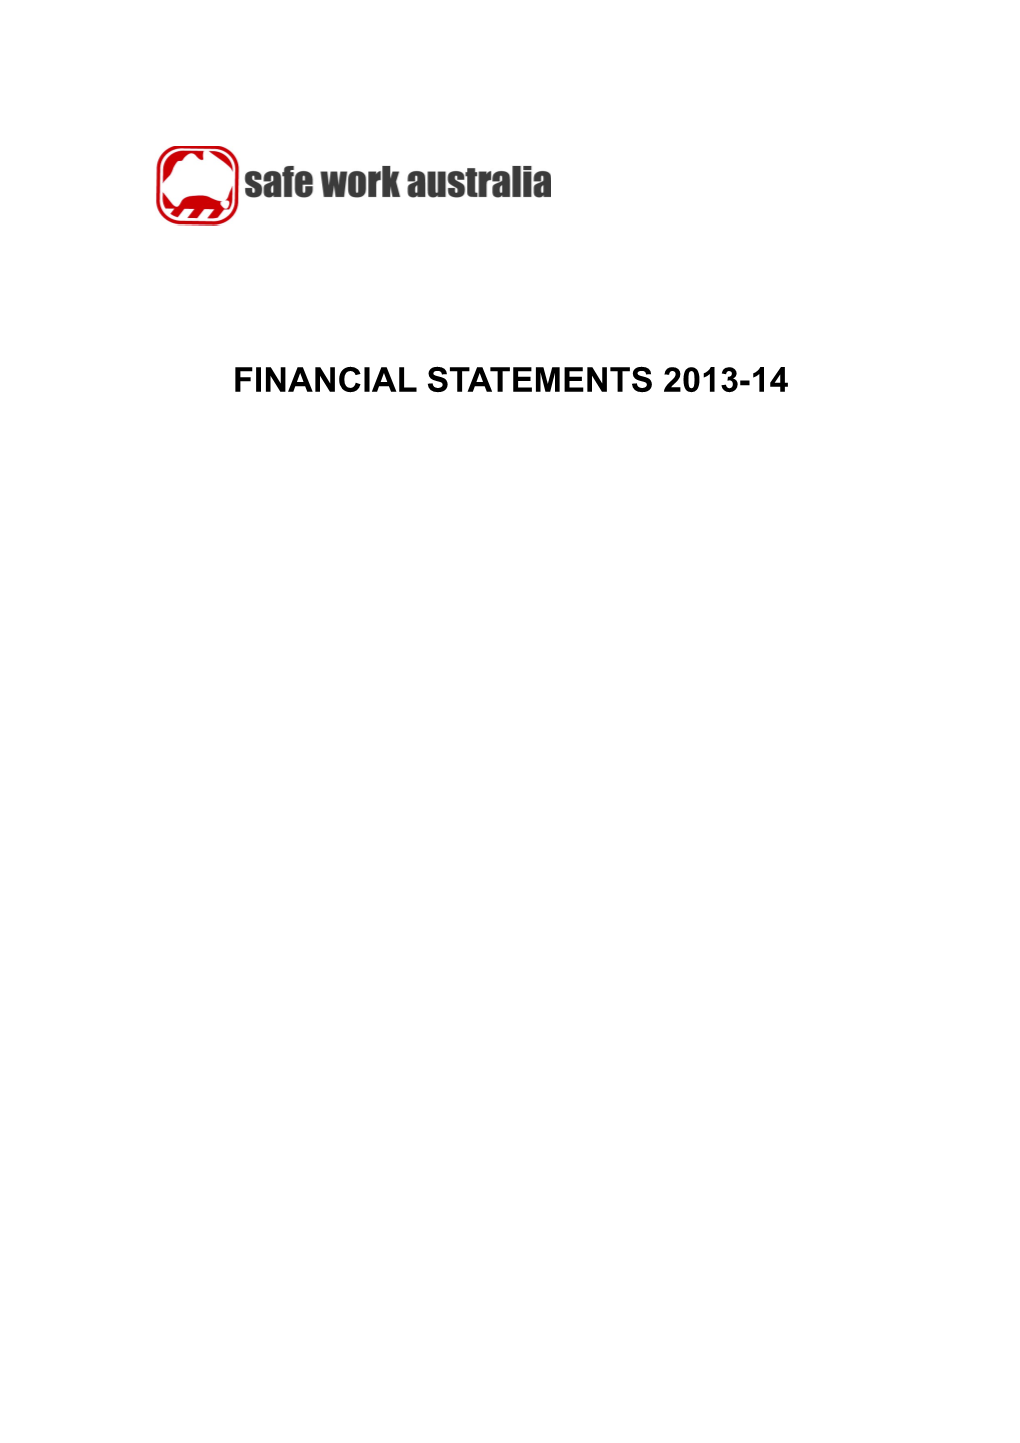 Safe Work Australia Financial Statements 2013-14